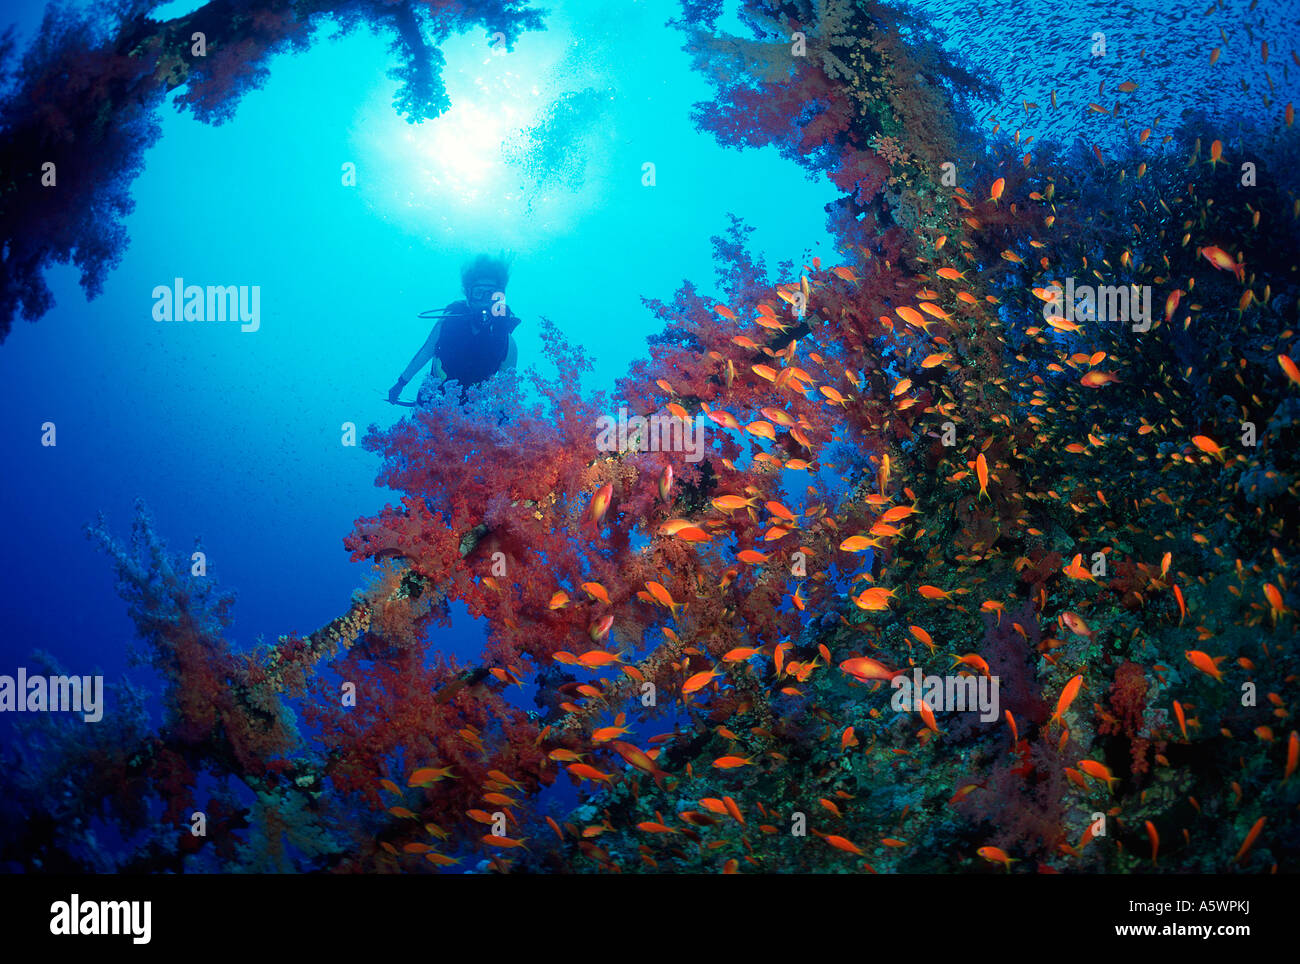 Femmina SUB SILHOUETTE dietro un naufragio nel Mar Rosso la vita marina abbondano sul relitto Foto Stock